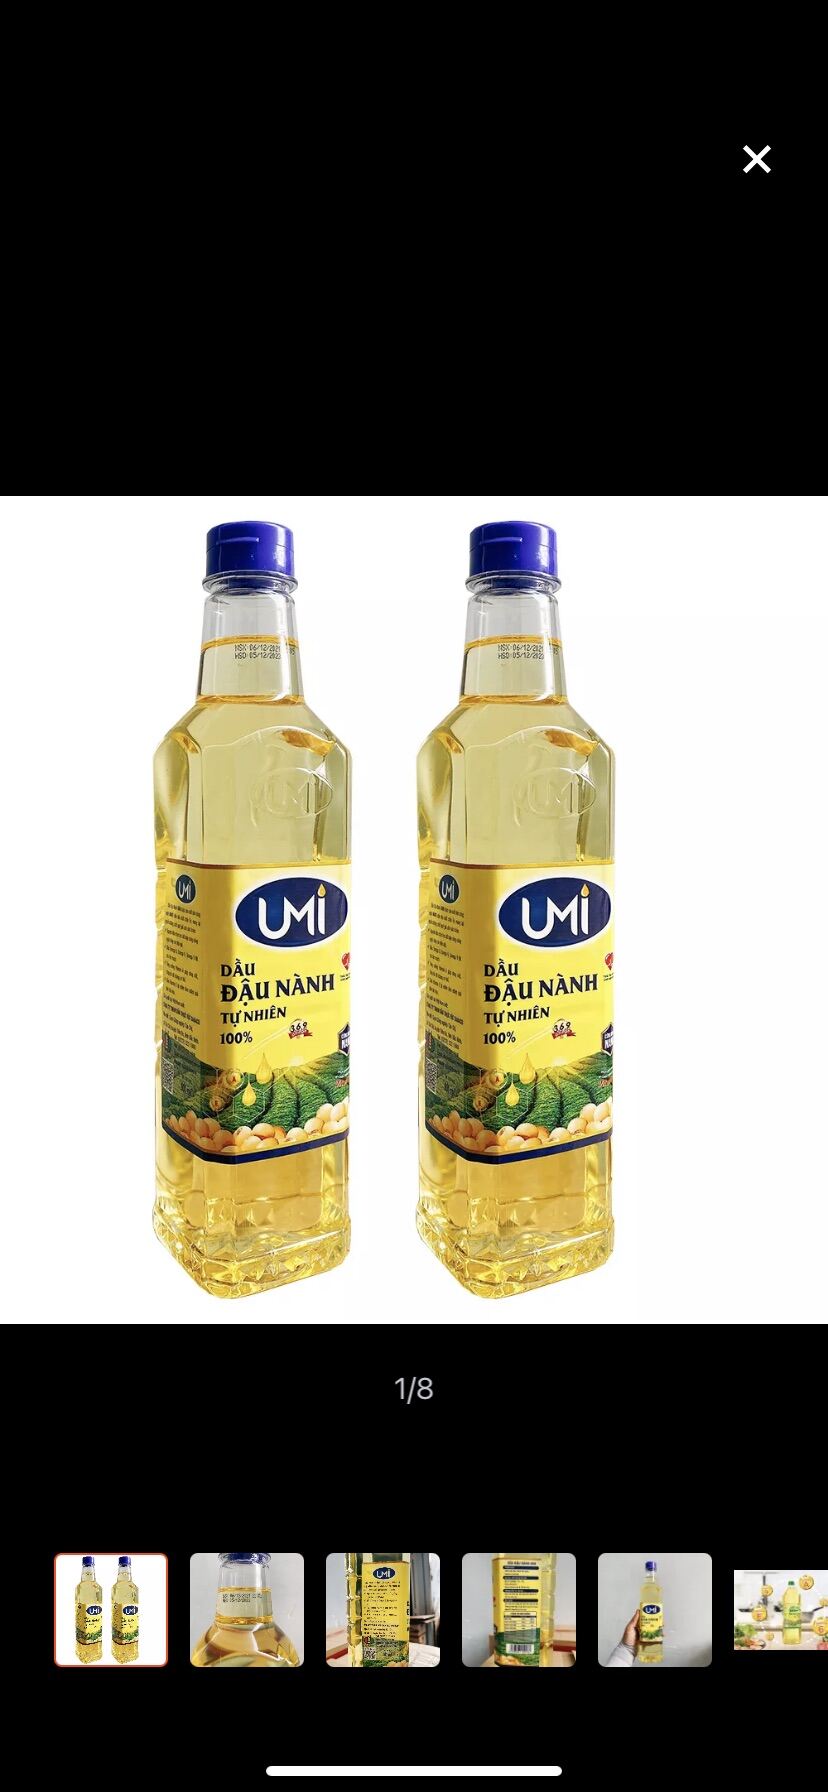 Combo 2 chai dầu ăn UMI đậu nành mỗi chai 900ml an toàn sức khoẻ